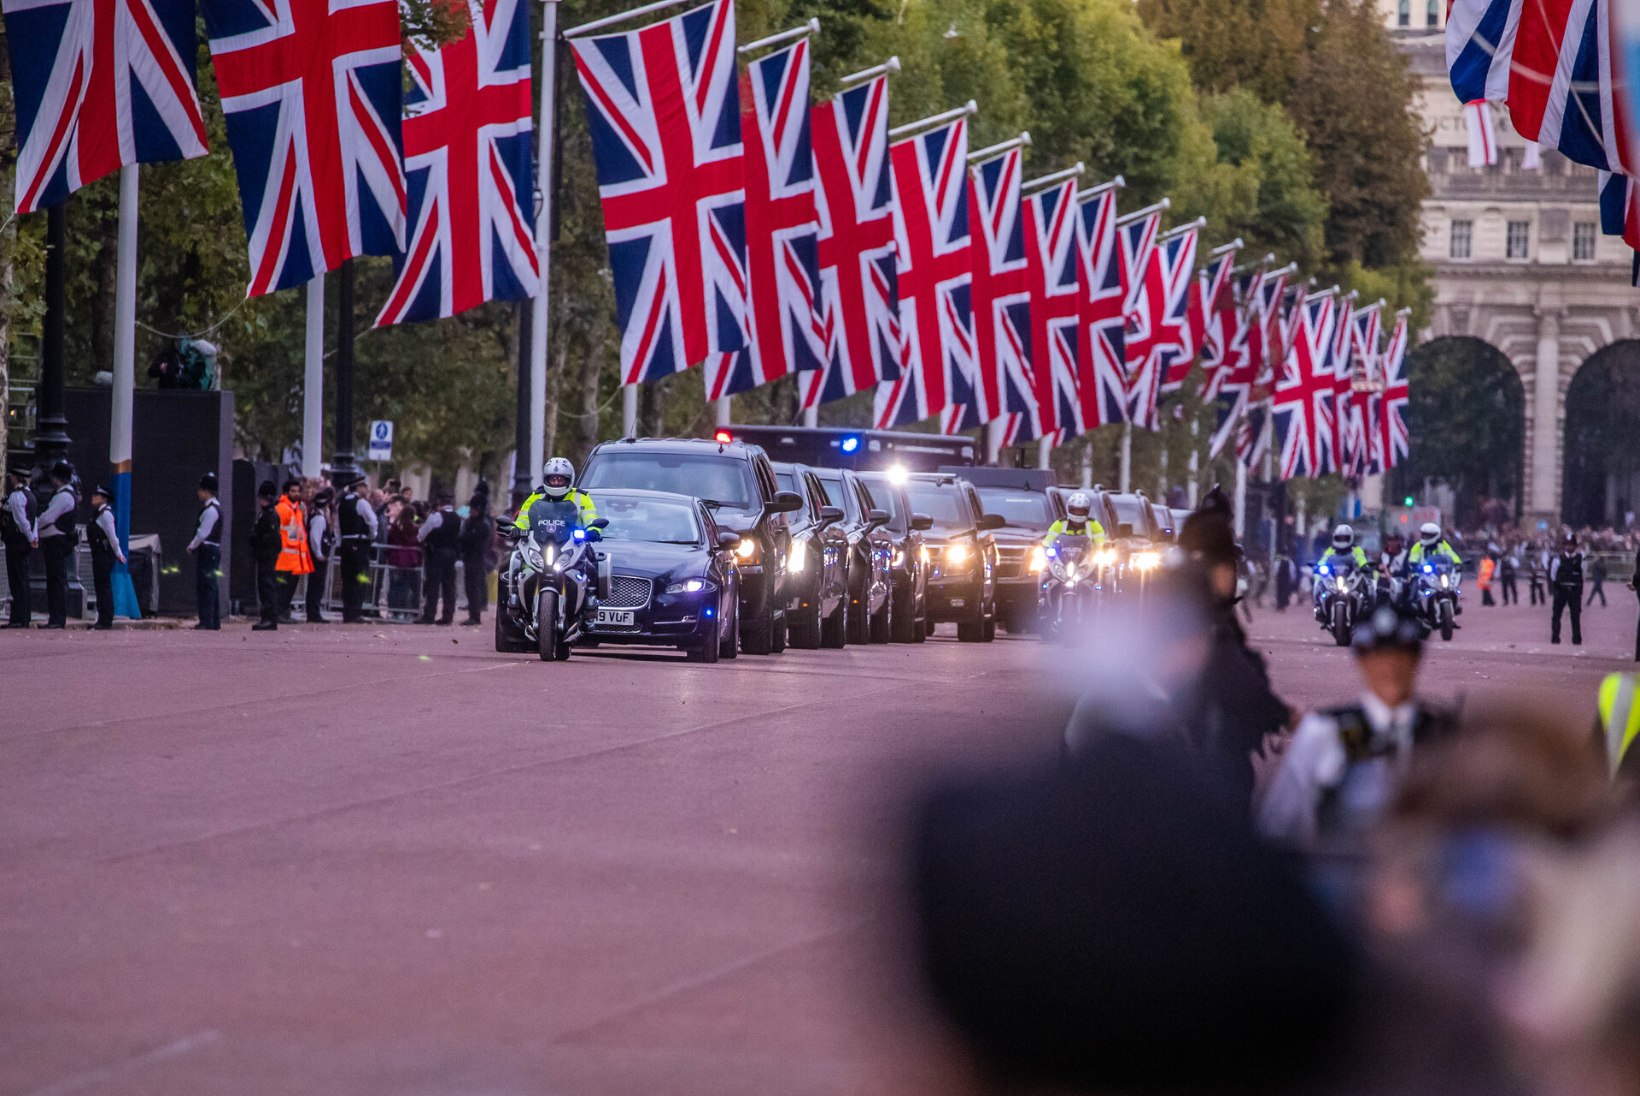 GALERII | ÕHTULEHT LONDONIS: õhtul enne matust on tänavad rahvast täis, riigipead saabuvad Buckinghami paleesse sajandi vastuvõtule